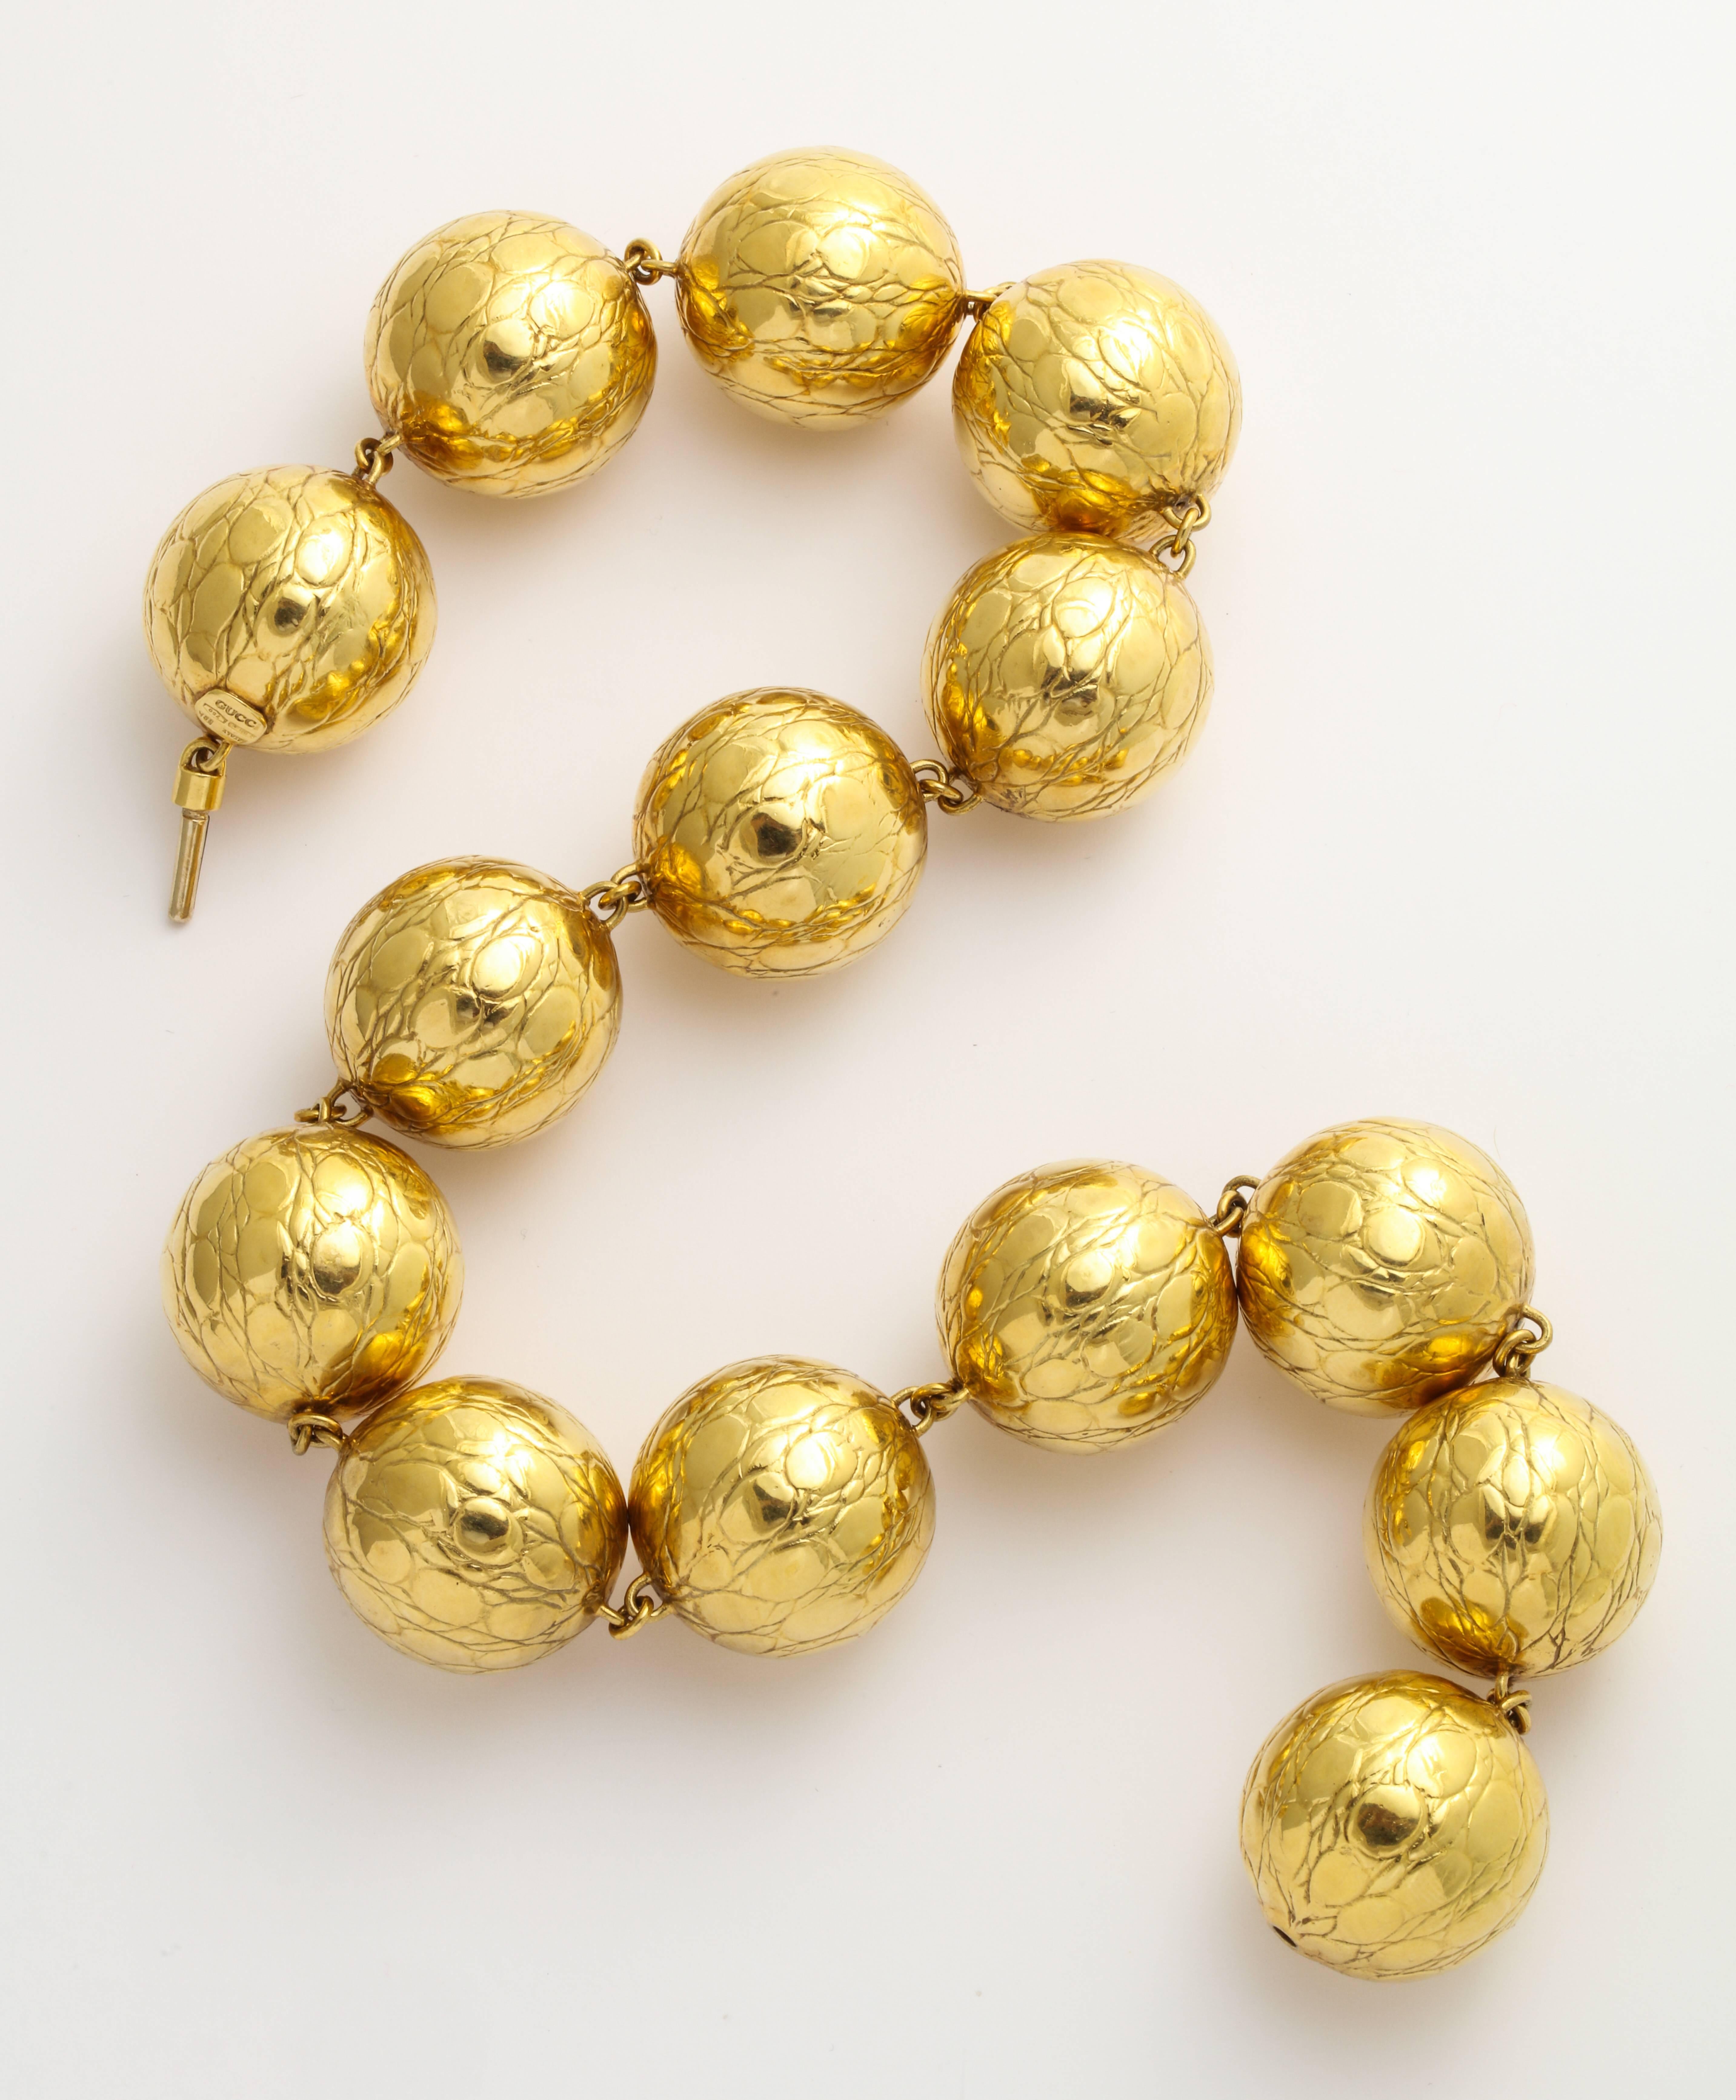 Un collier Gucci audacieux et stupéfiant de boules d'or 18K de 1 pouce reliées entre elles avec une finition en alligator encastré. 18 pouces de long. Marque en or, marque Gucci et Italie. 127,7 grammes.